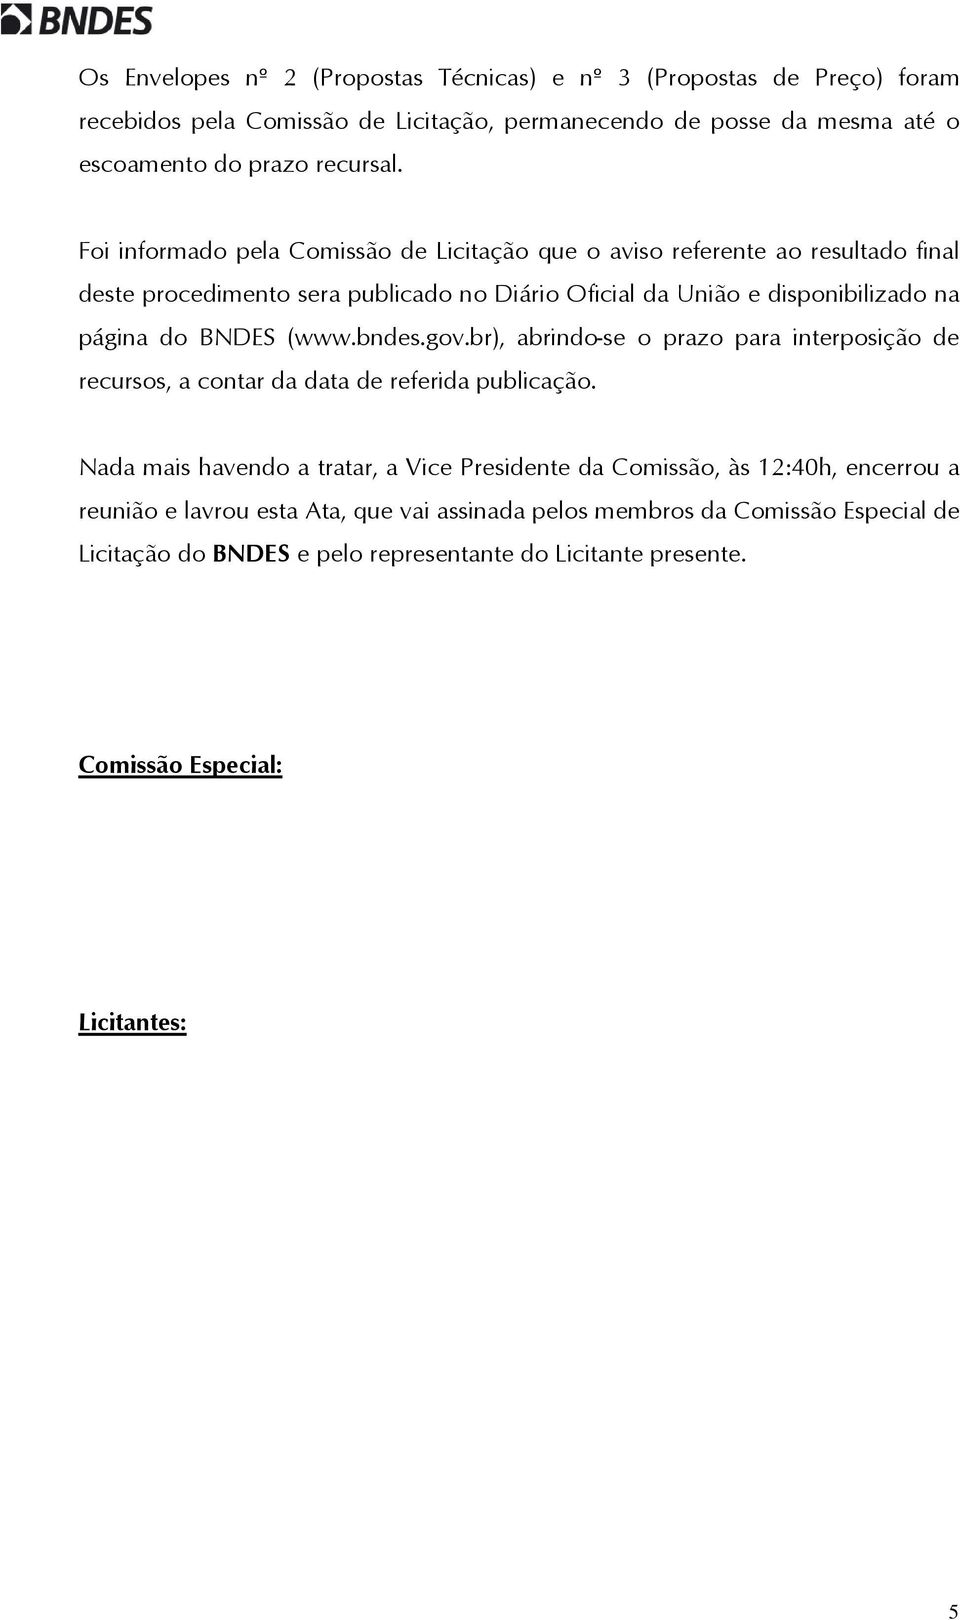 (www.bndes.gov.br), abrindo-se o prazo para interposição de recursos, a contar da data de referida publicação.